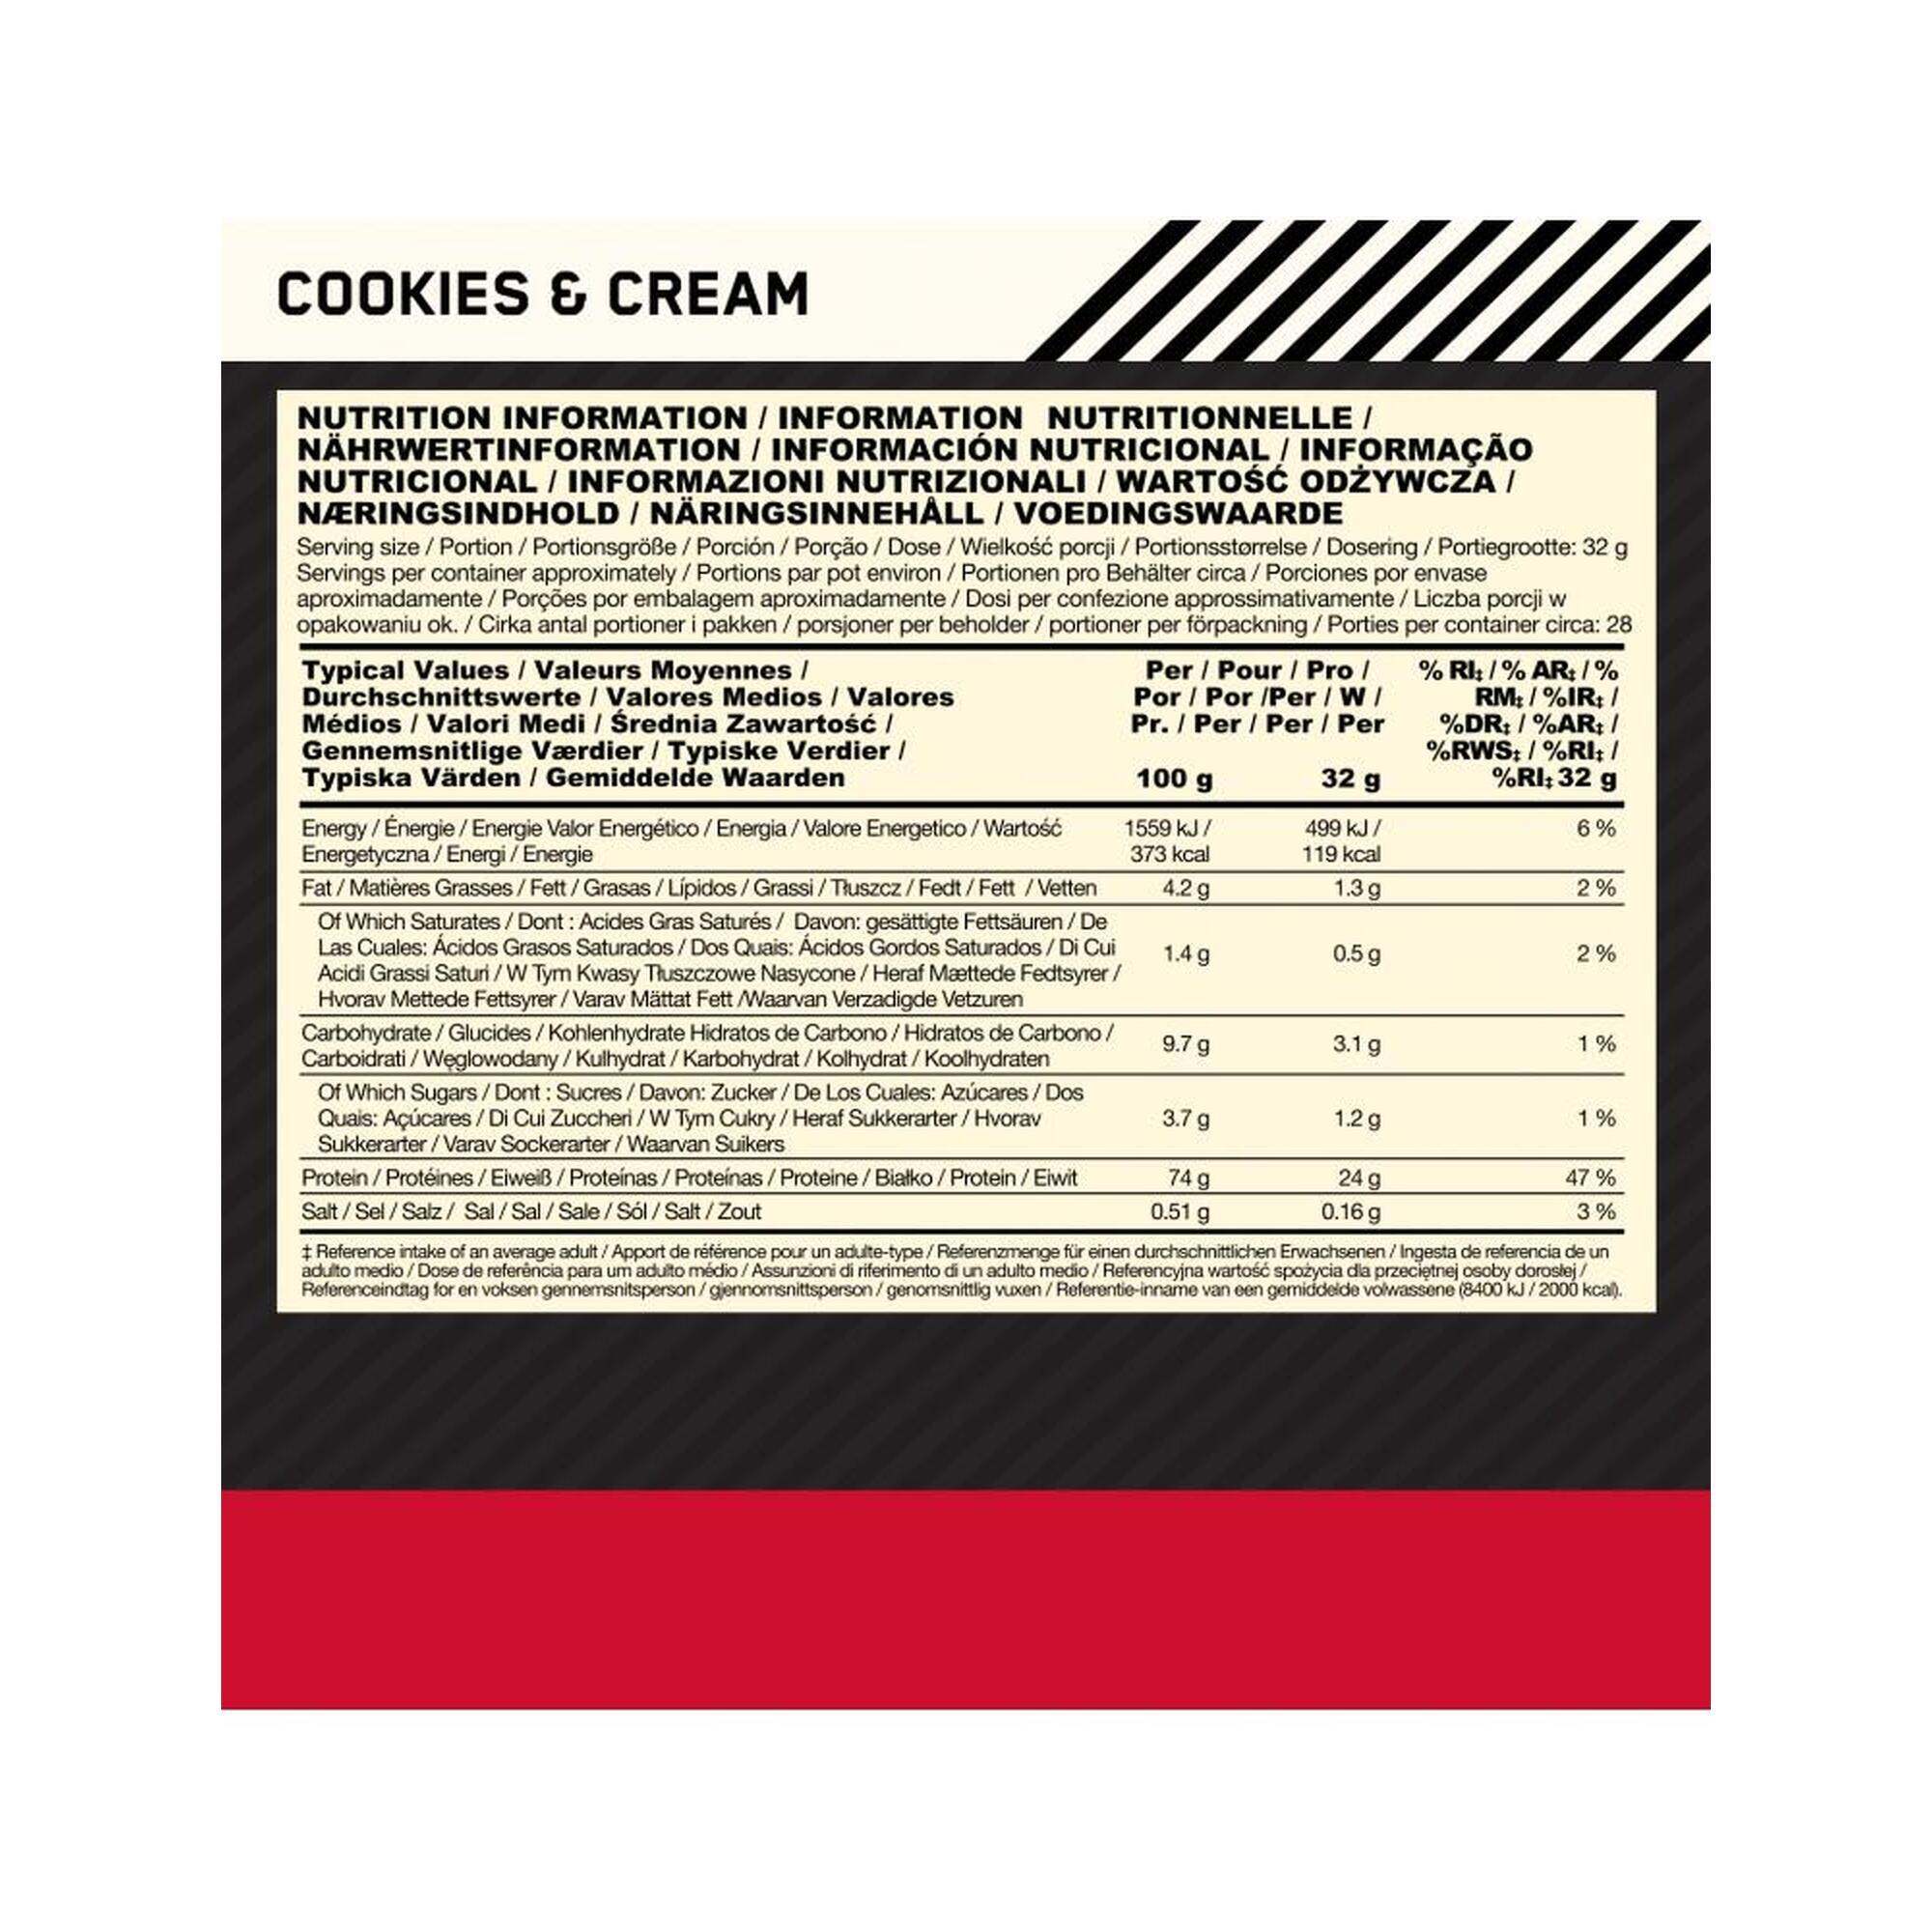 Gold Standard 100% Whey Protein Cookies & Cream 28 Portionen (896 Gramm)